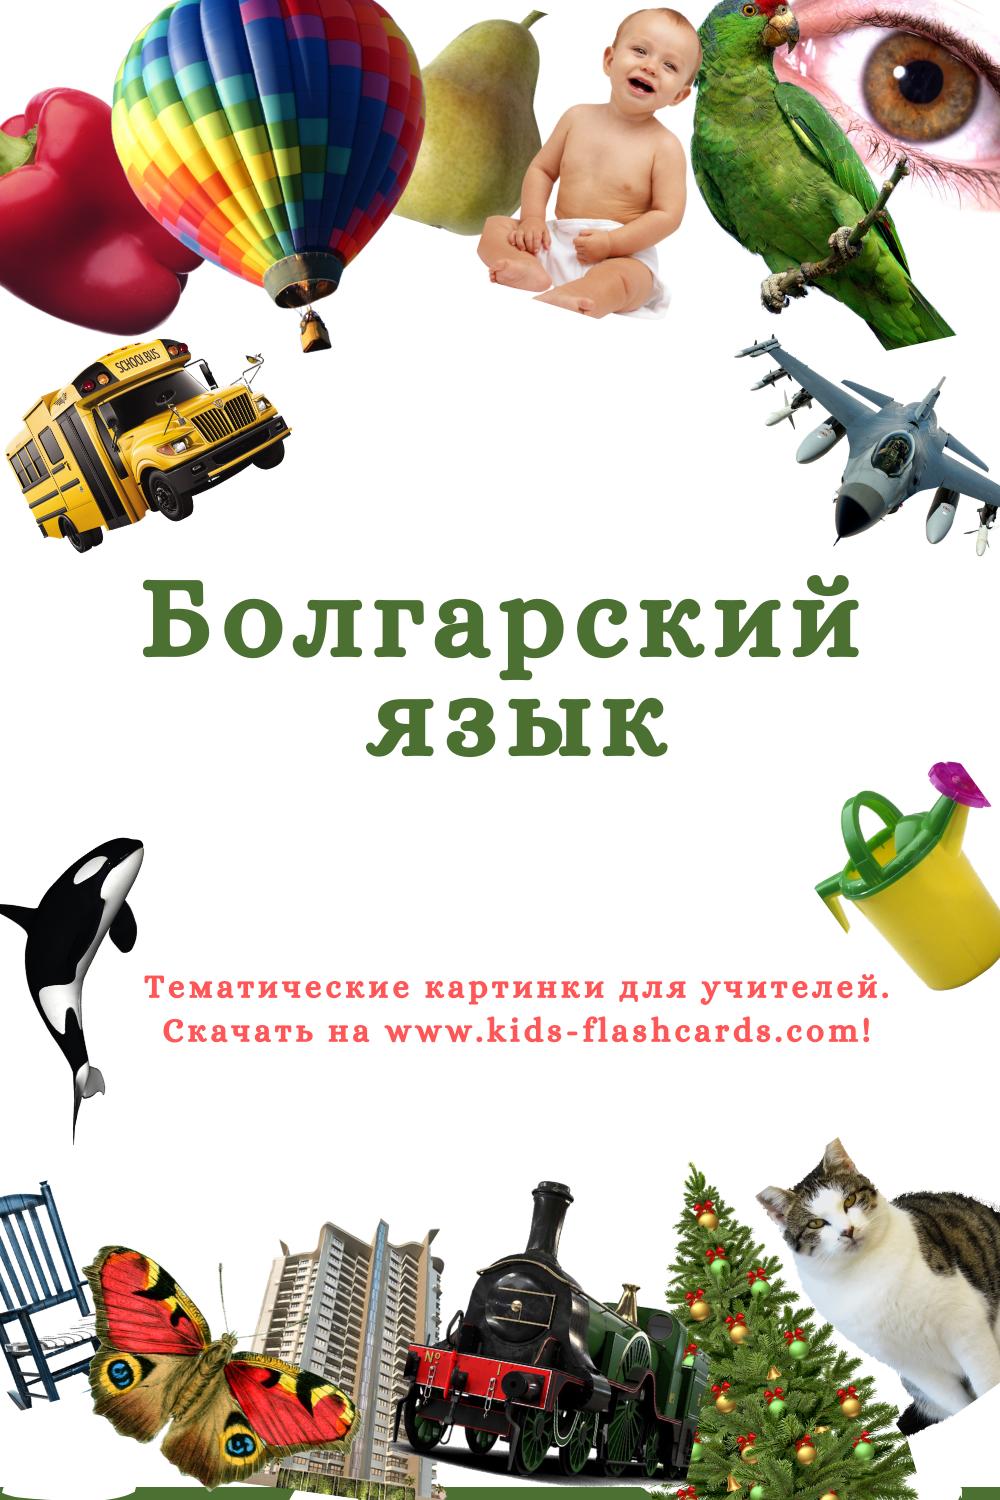 Болгарский язык - распечатки для детей